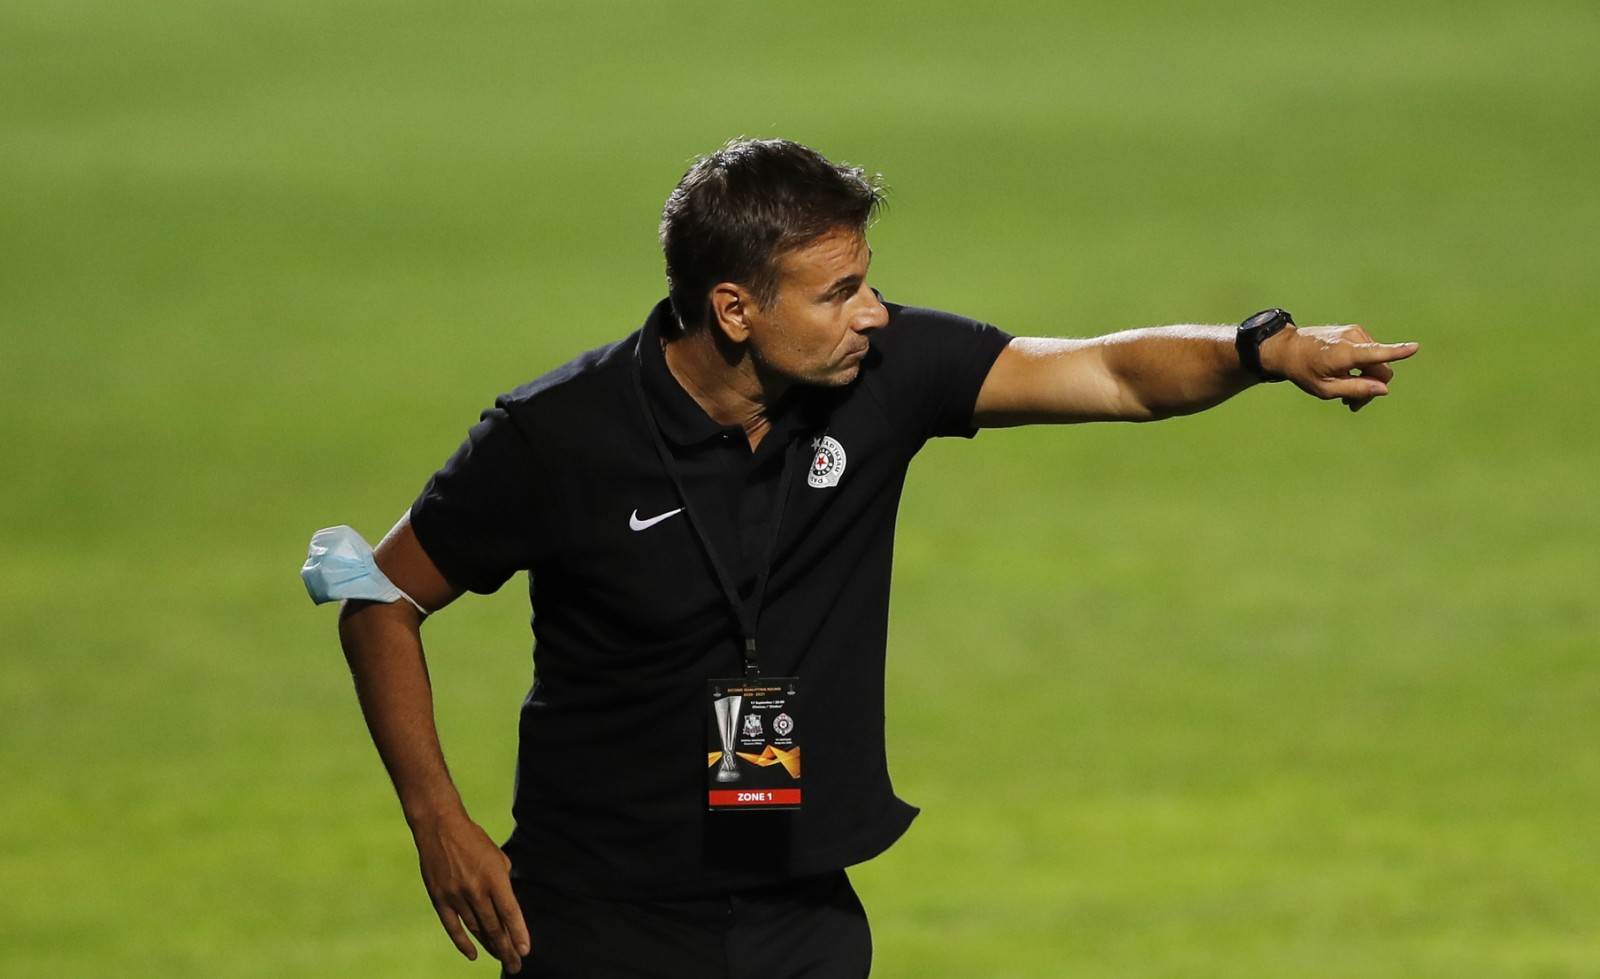  Aleksandar Stanojević izjava Sfintul Partizan 0:1 Liga Evrope kvalifikacije Lutovac 